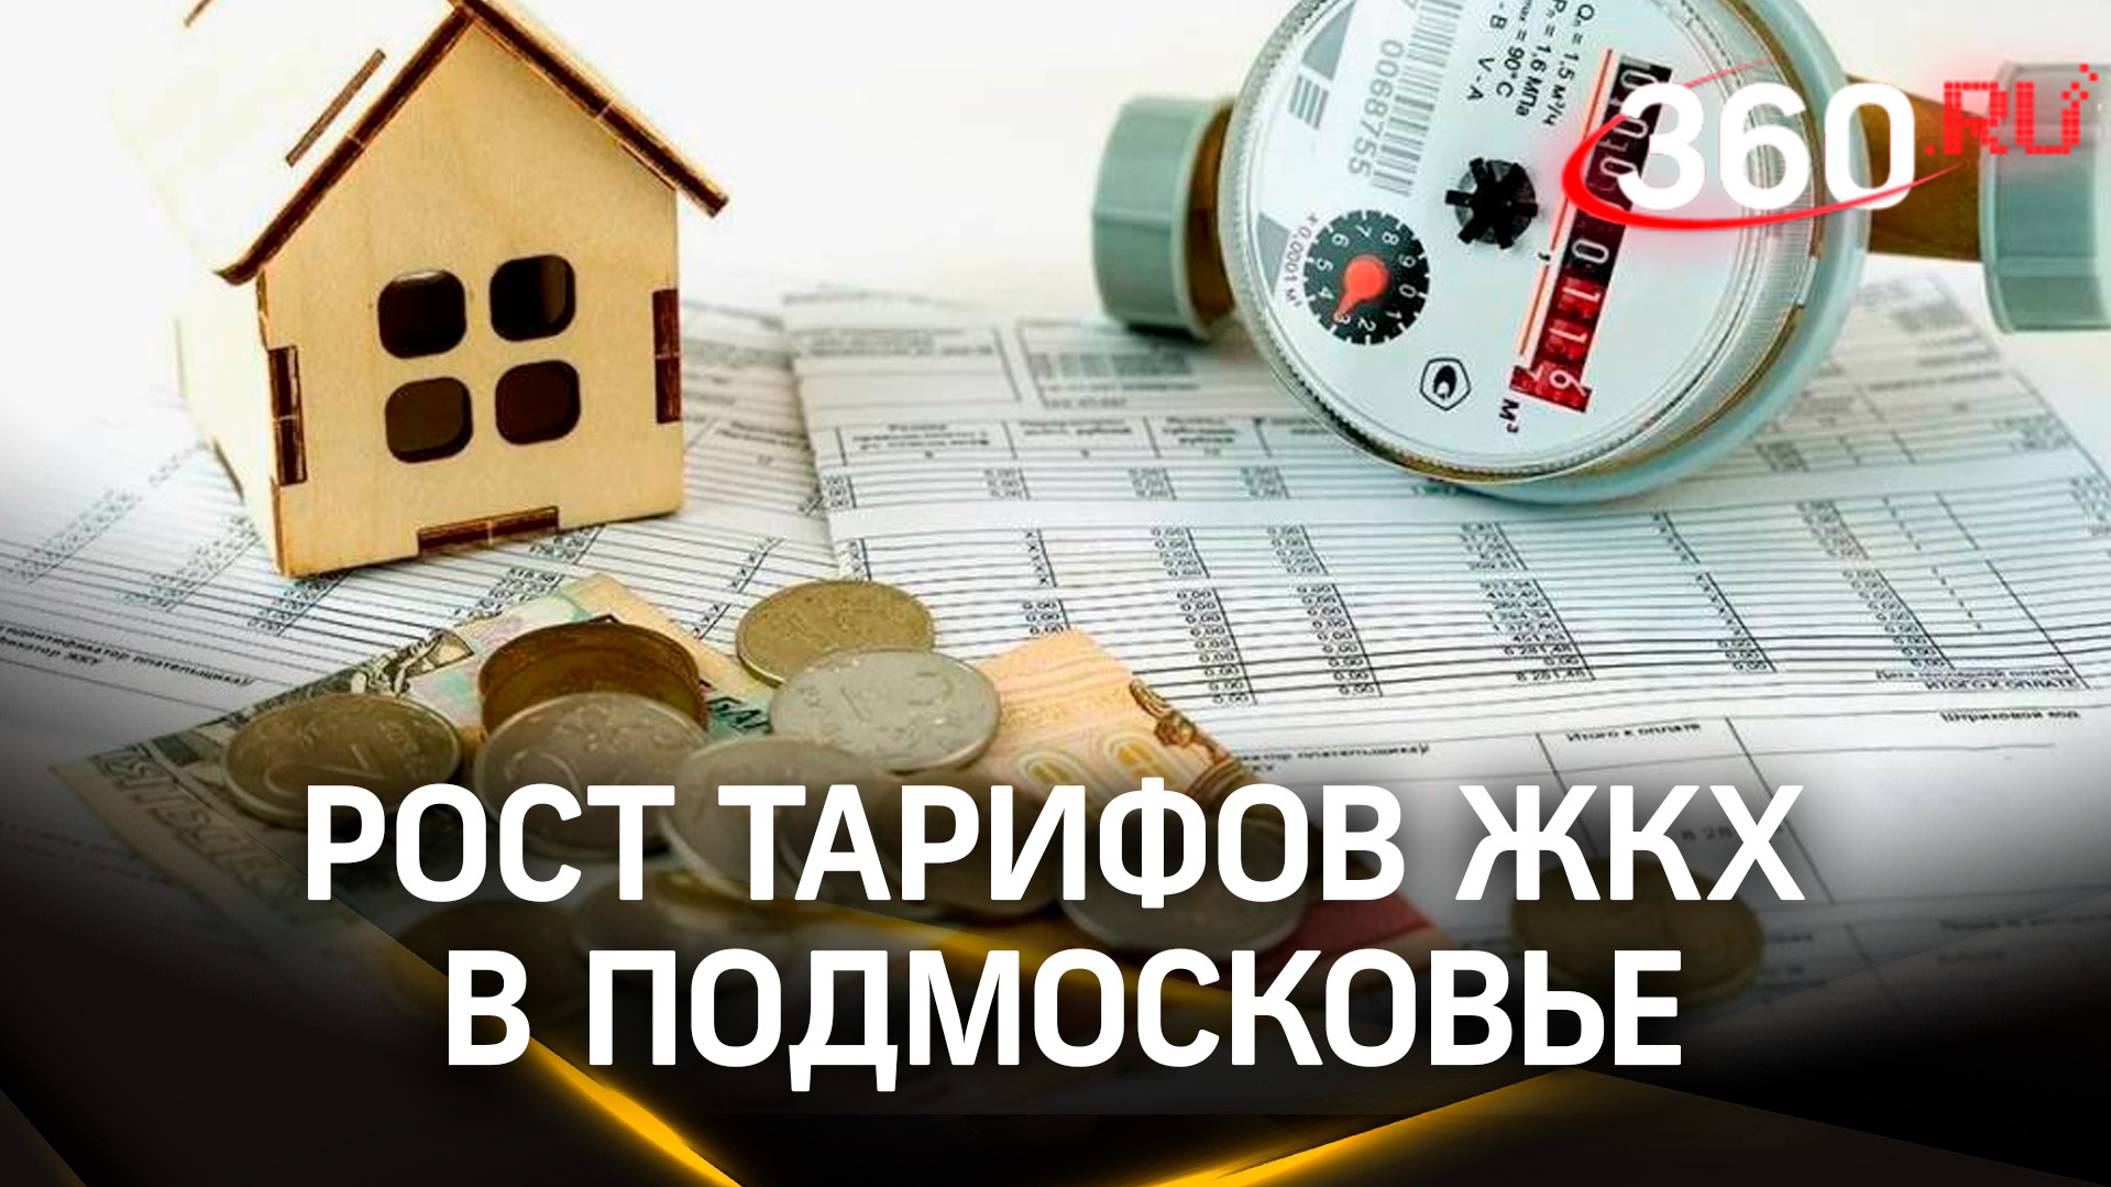 За квартиру придется платить больше: рост тарифов ЖКХ в Подмосковье